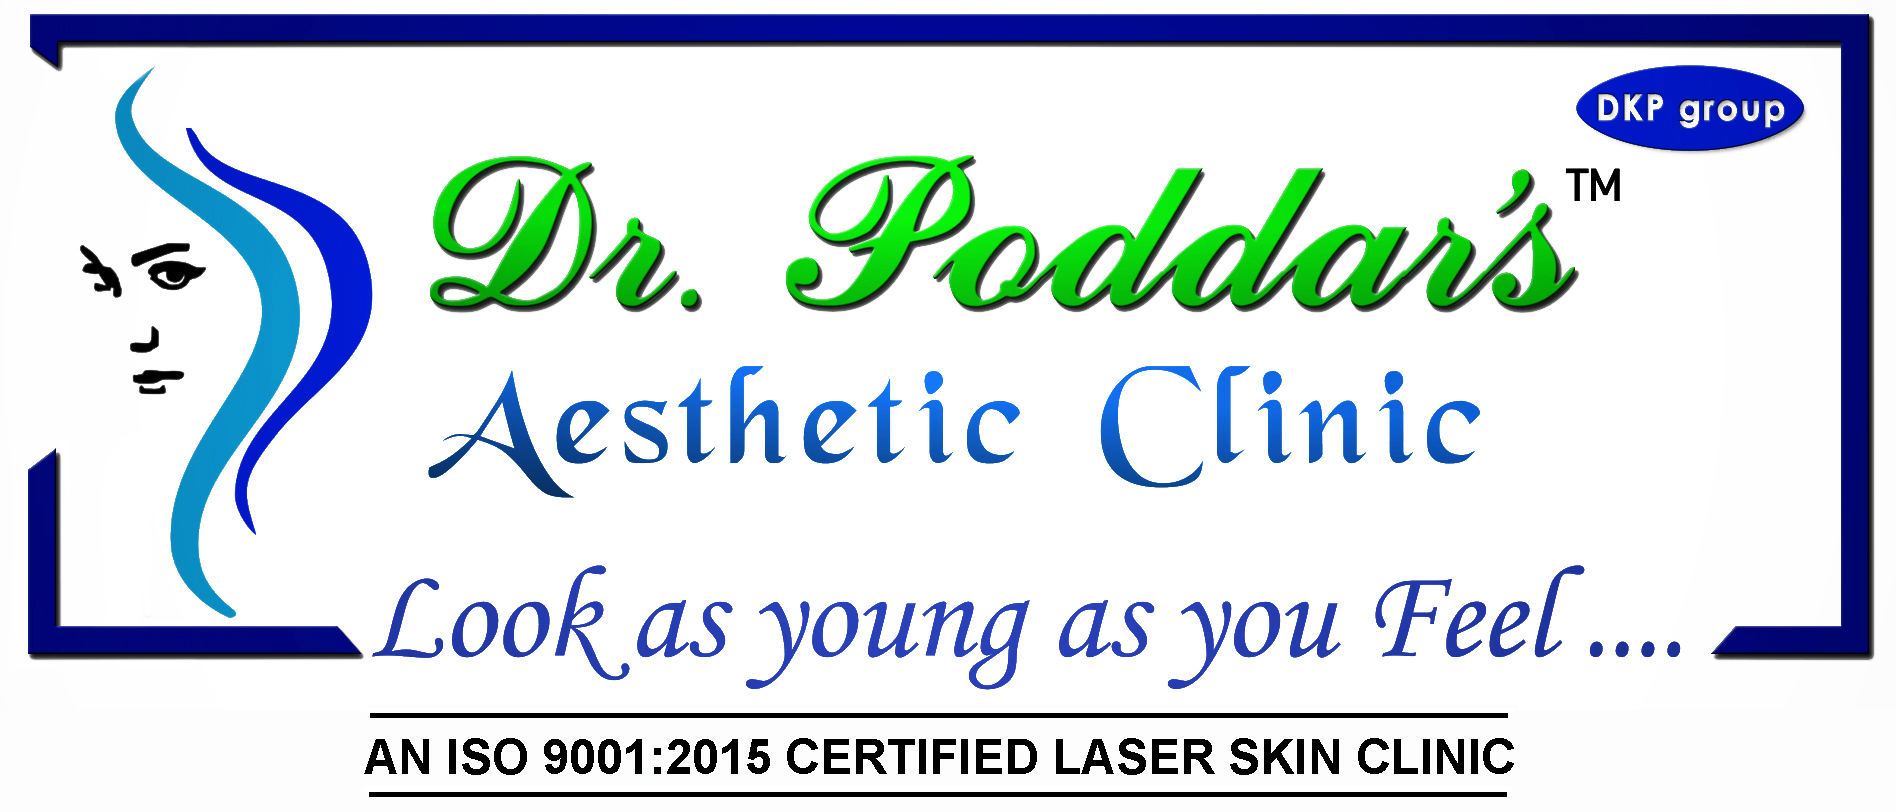 Dr. Poddar's Aesthetic clinic